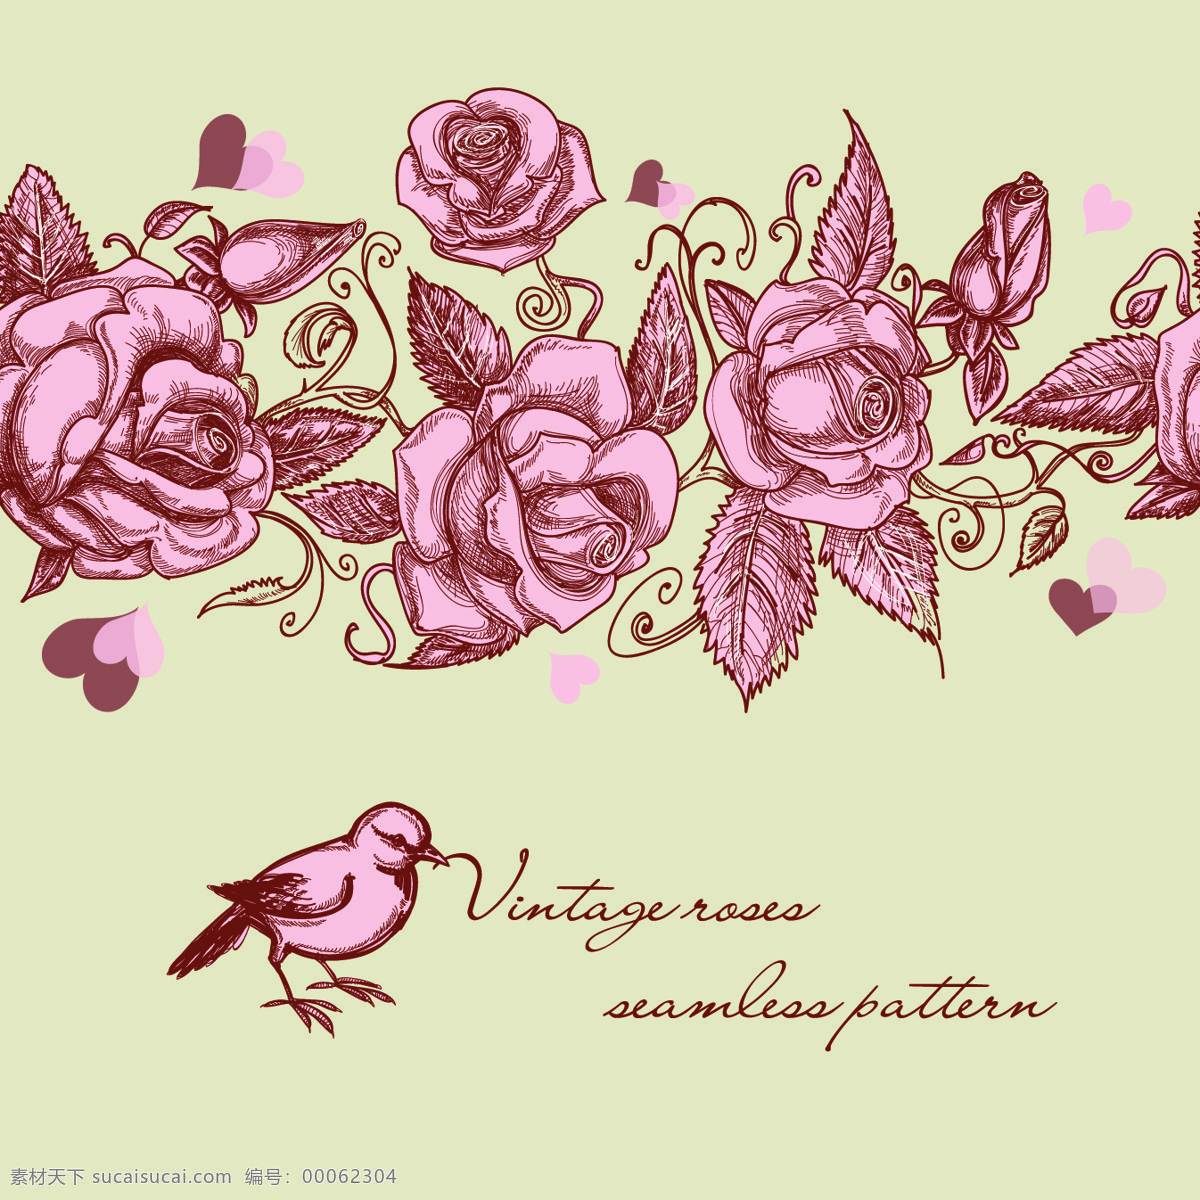 典雅花纹 复古 绘画书法 欧式 文化艺术 小鸟 玫瑰 花纹 设计素材 模板下载 玫瑰之恋 矢量图 花纹花边